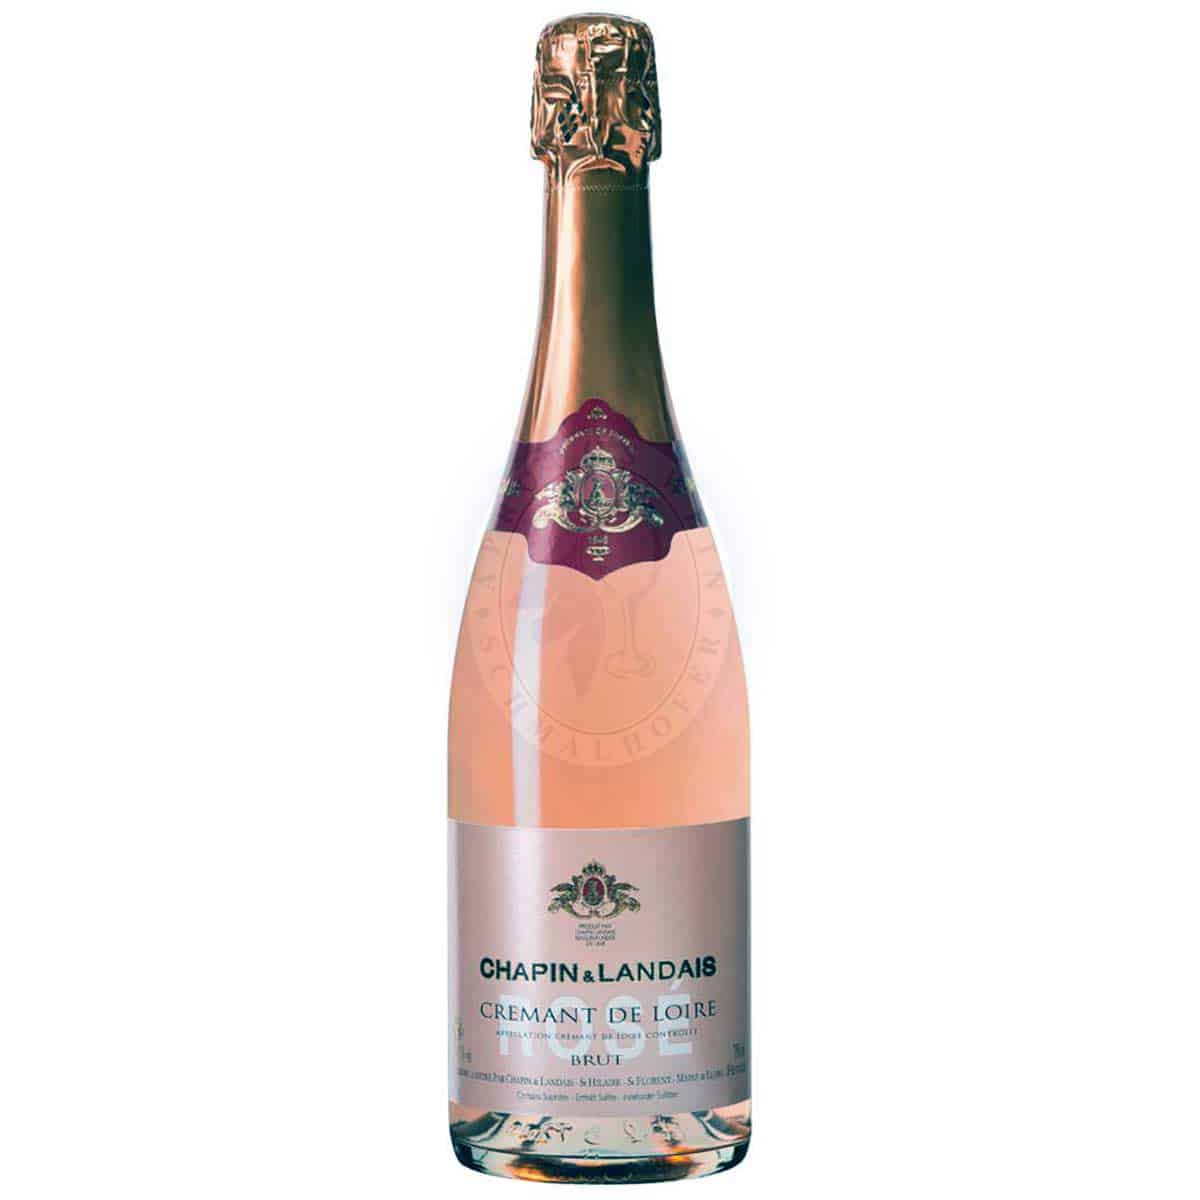 Cremant de – Loire Rosé Apropos Chapin 0,75l GmbH Landais online günstig Brut kaufen Wein 